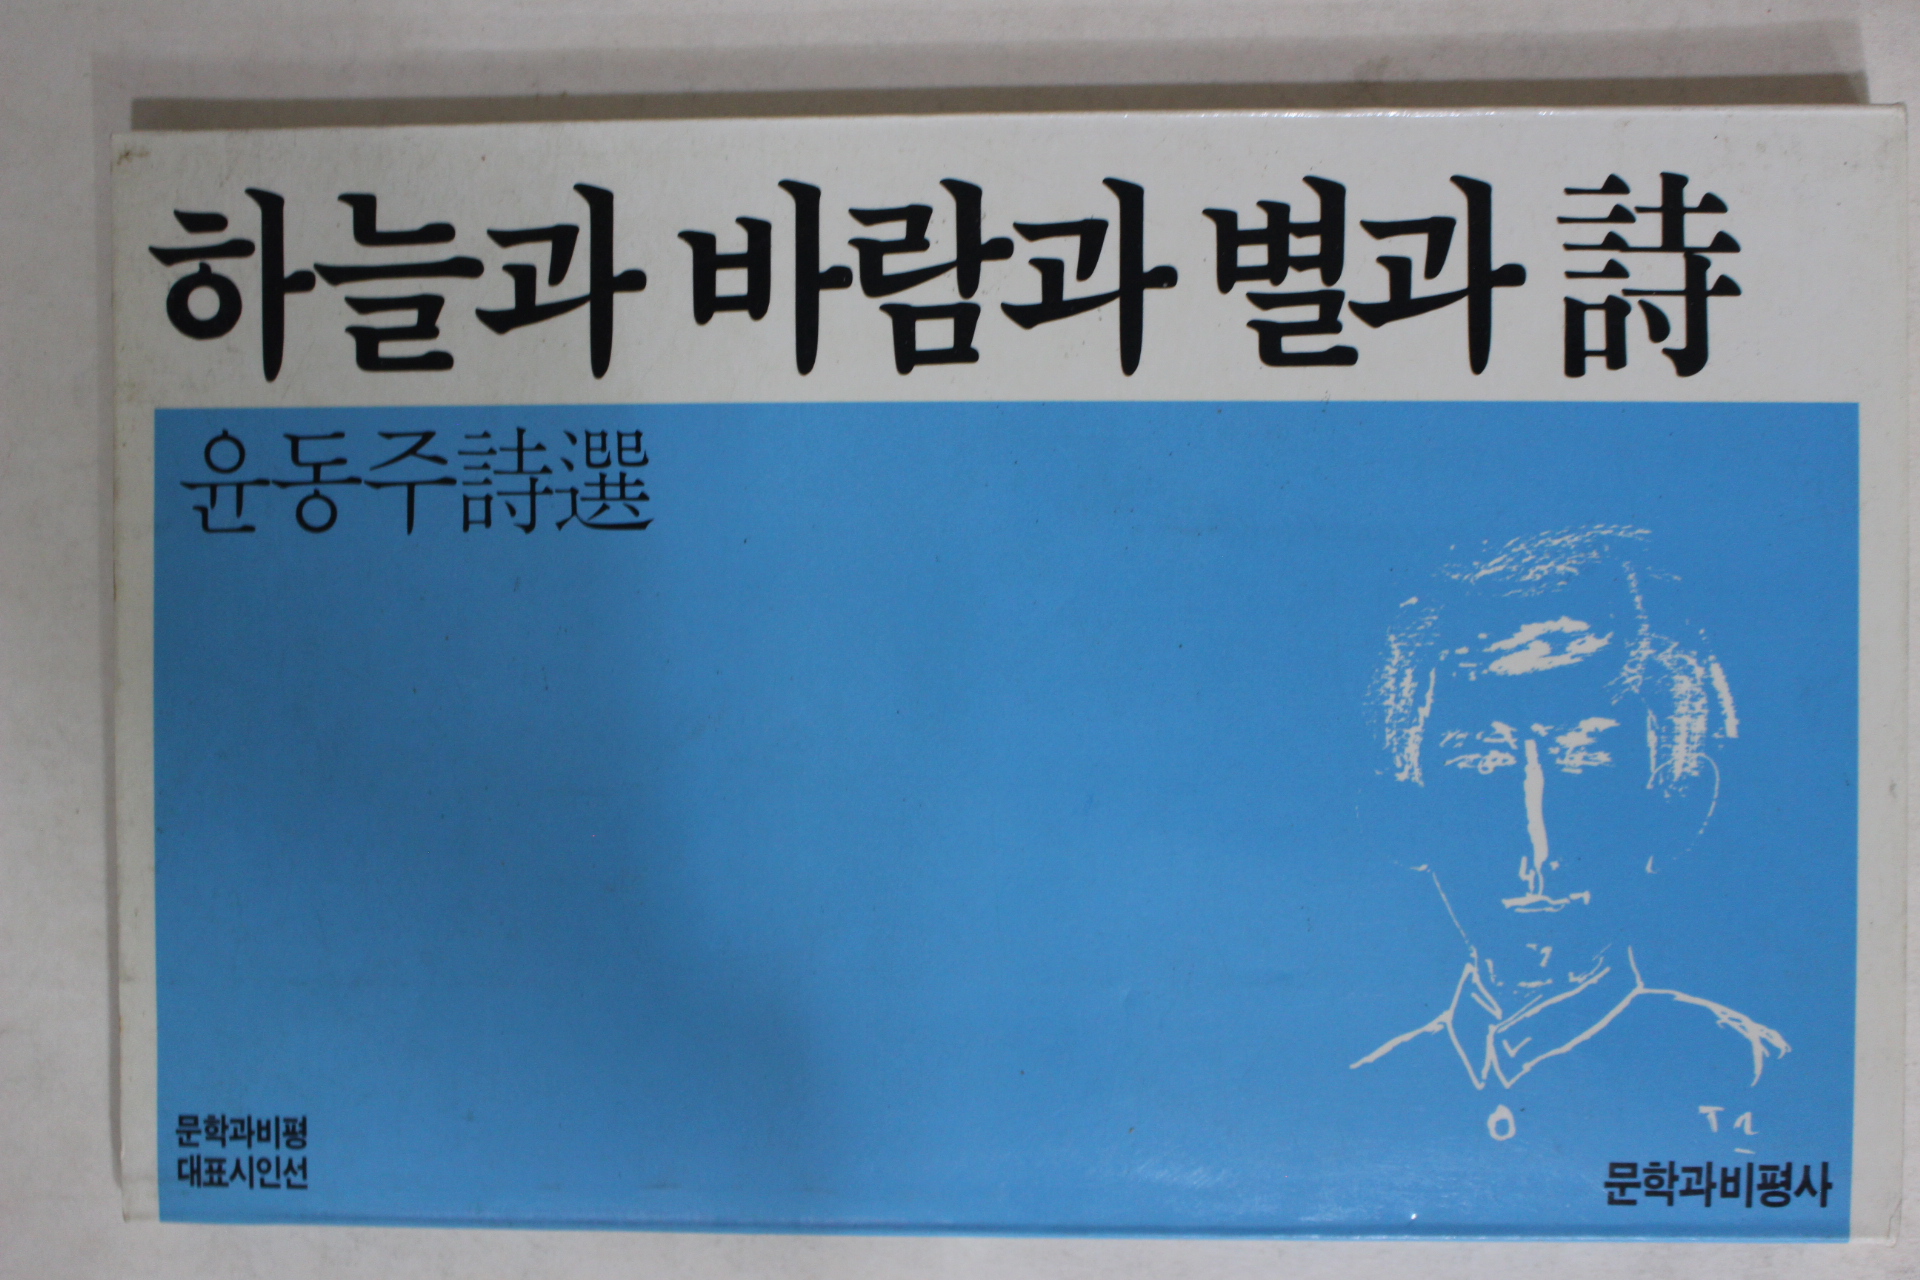 1988년초판 문학과비평사 윤동주(尹東柱)시집 하늘과바람과별과詩